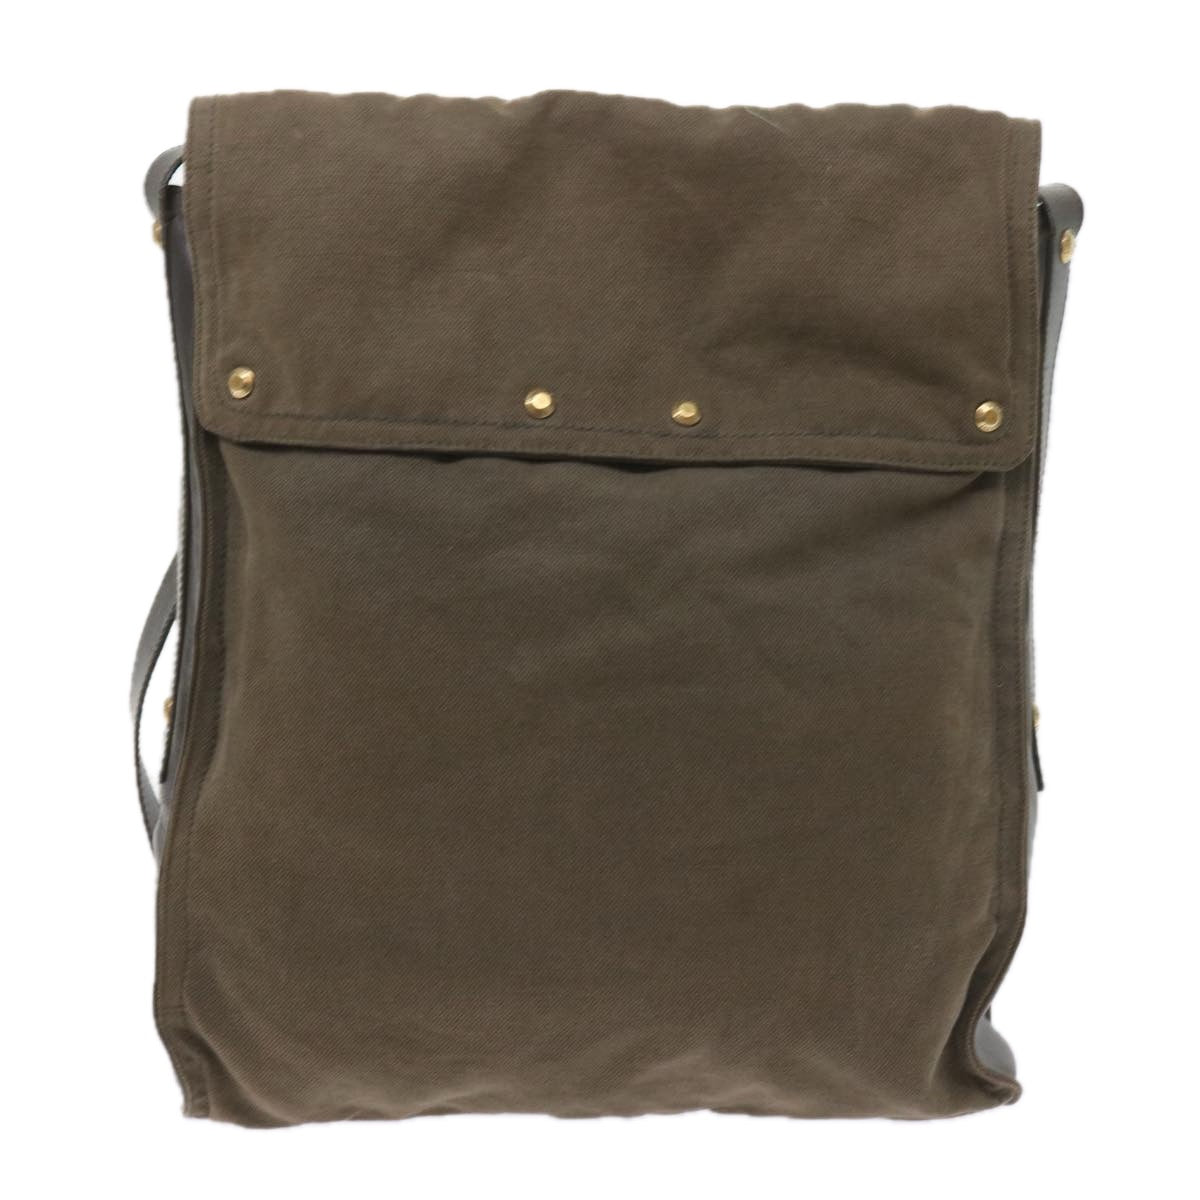 SAINT LAURENT Shoulder Bag Canvas Khaki Auth bs9927 - 0